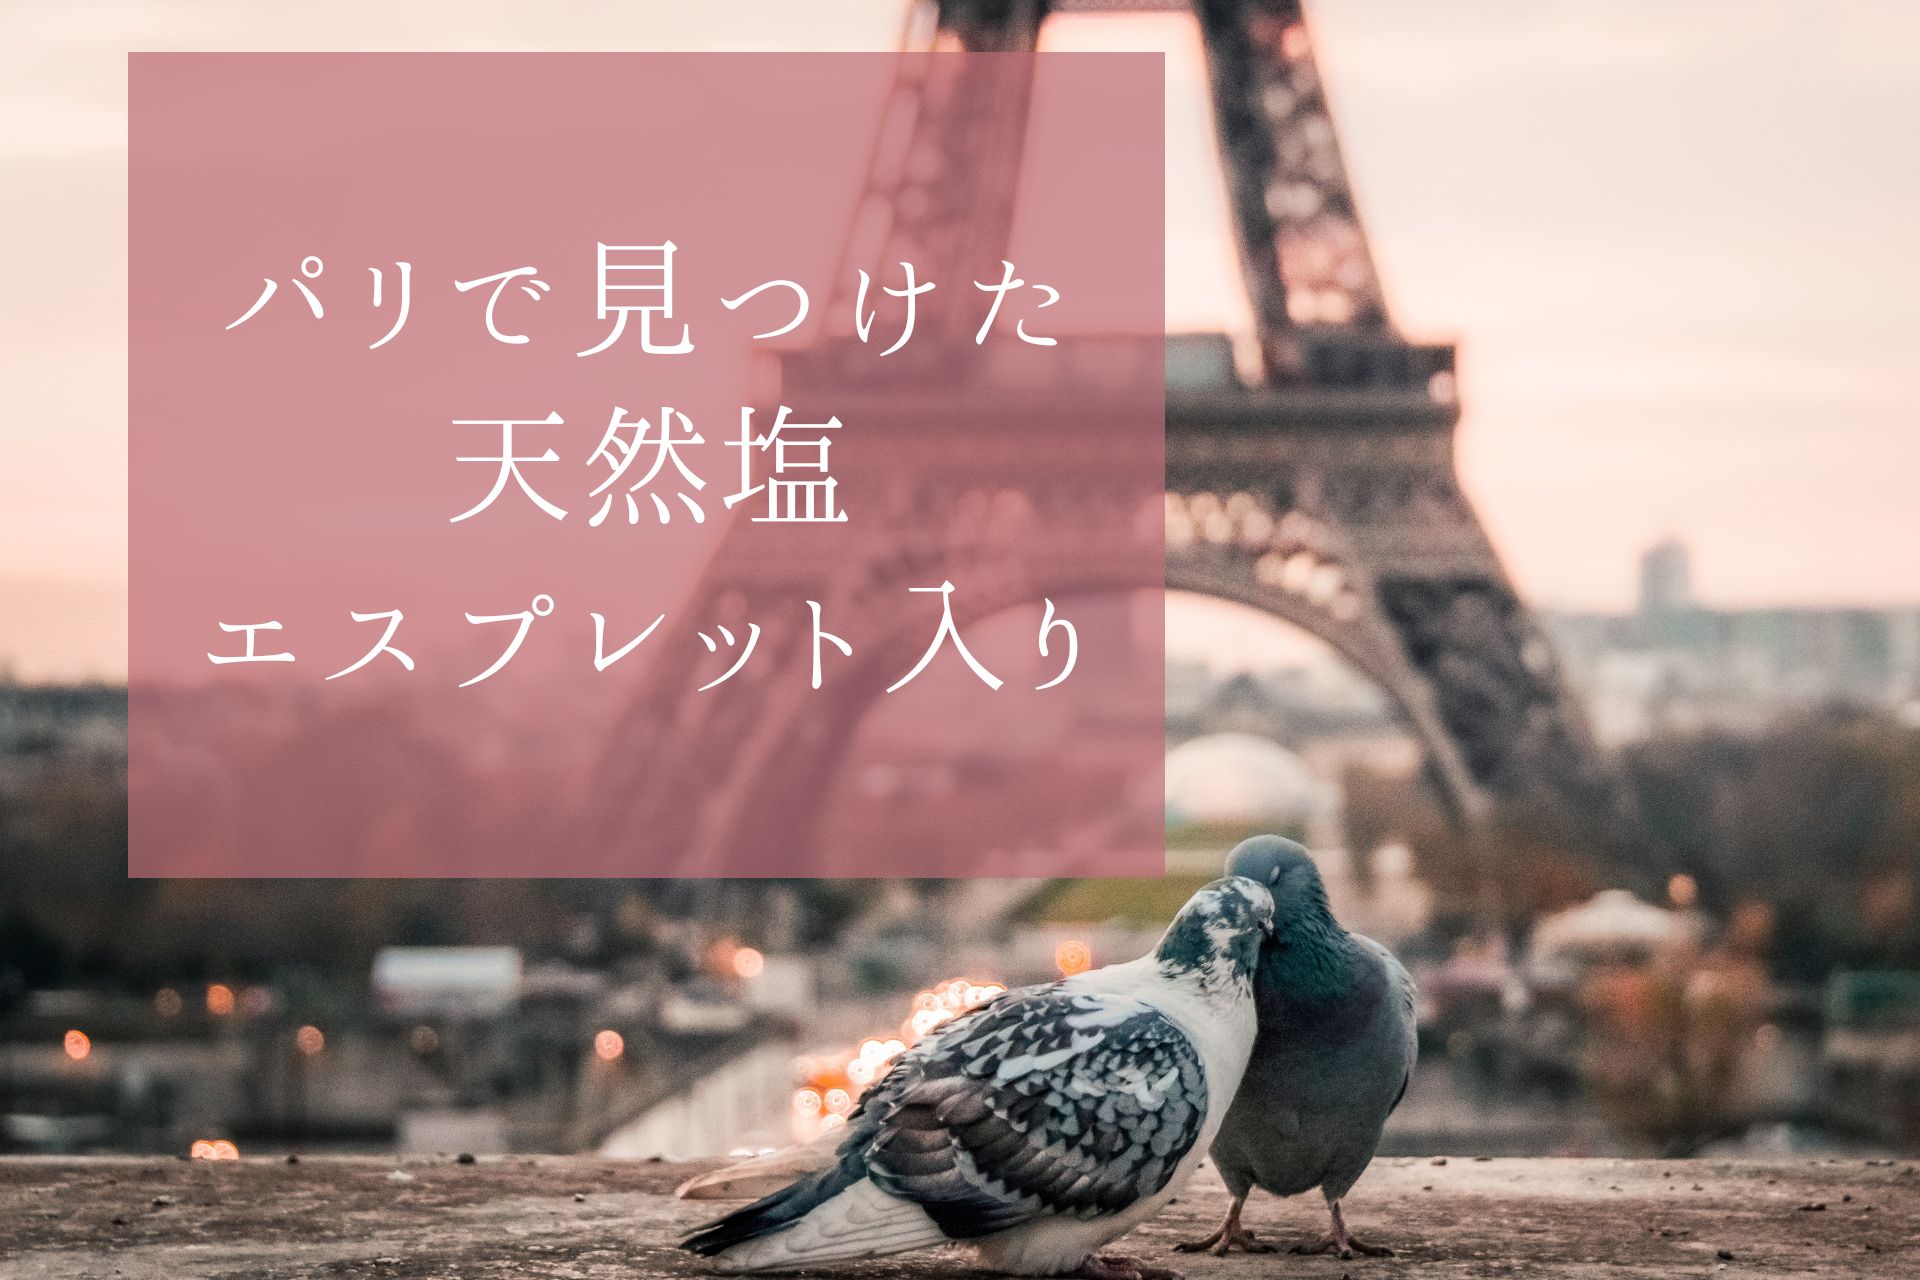 【フルール・ド・セル】フランス・パリのMonoprixでやっと再会できた日本では買えないエスプレット唐辛子入りフルール・ド・セル。